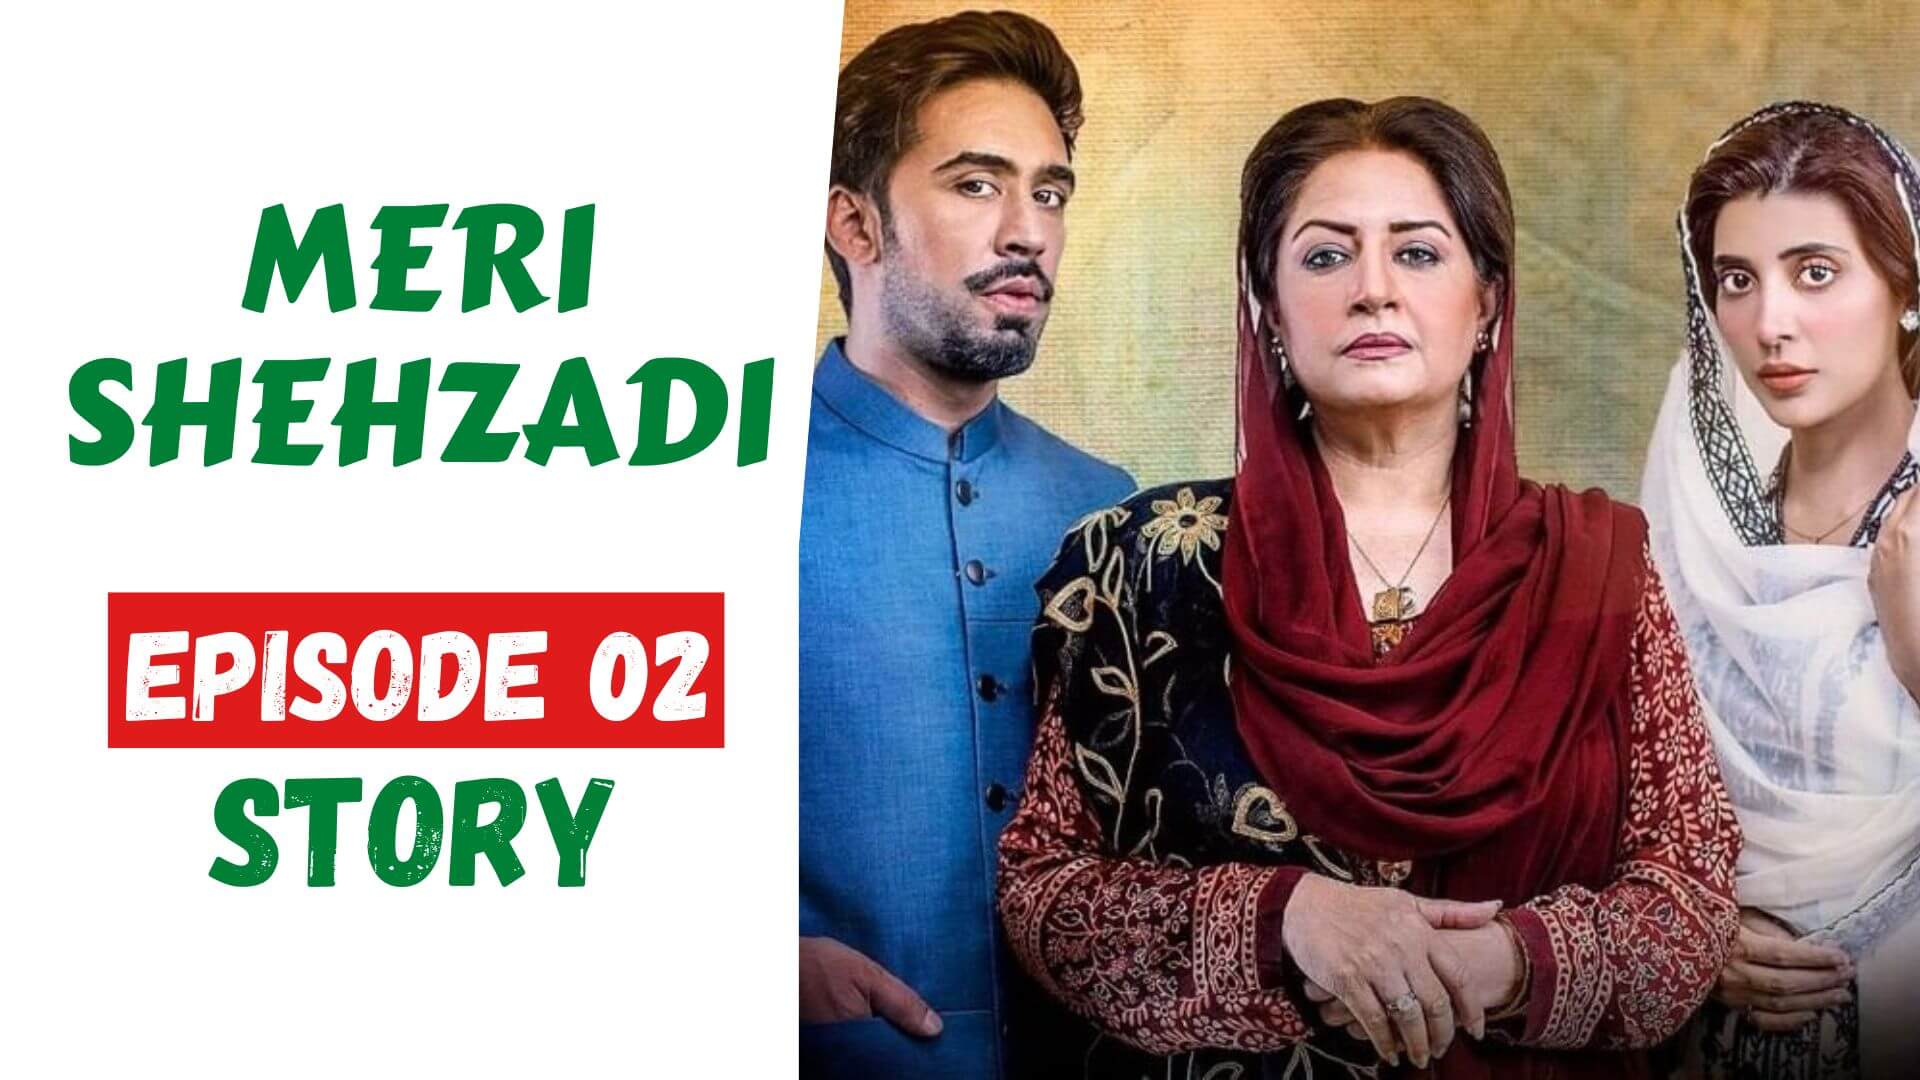 Meri Shehzadi Episode 02 Story